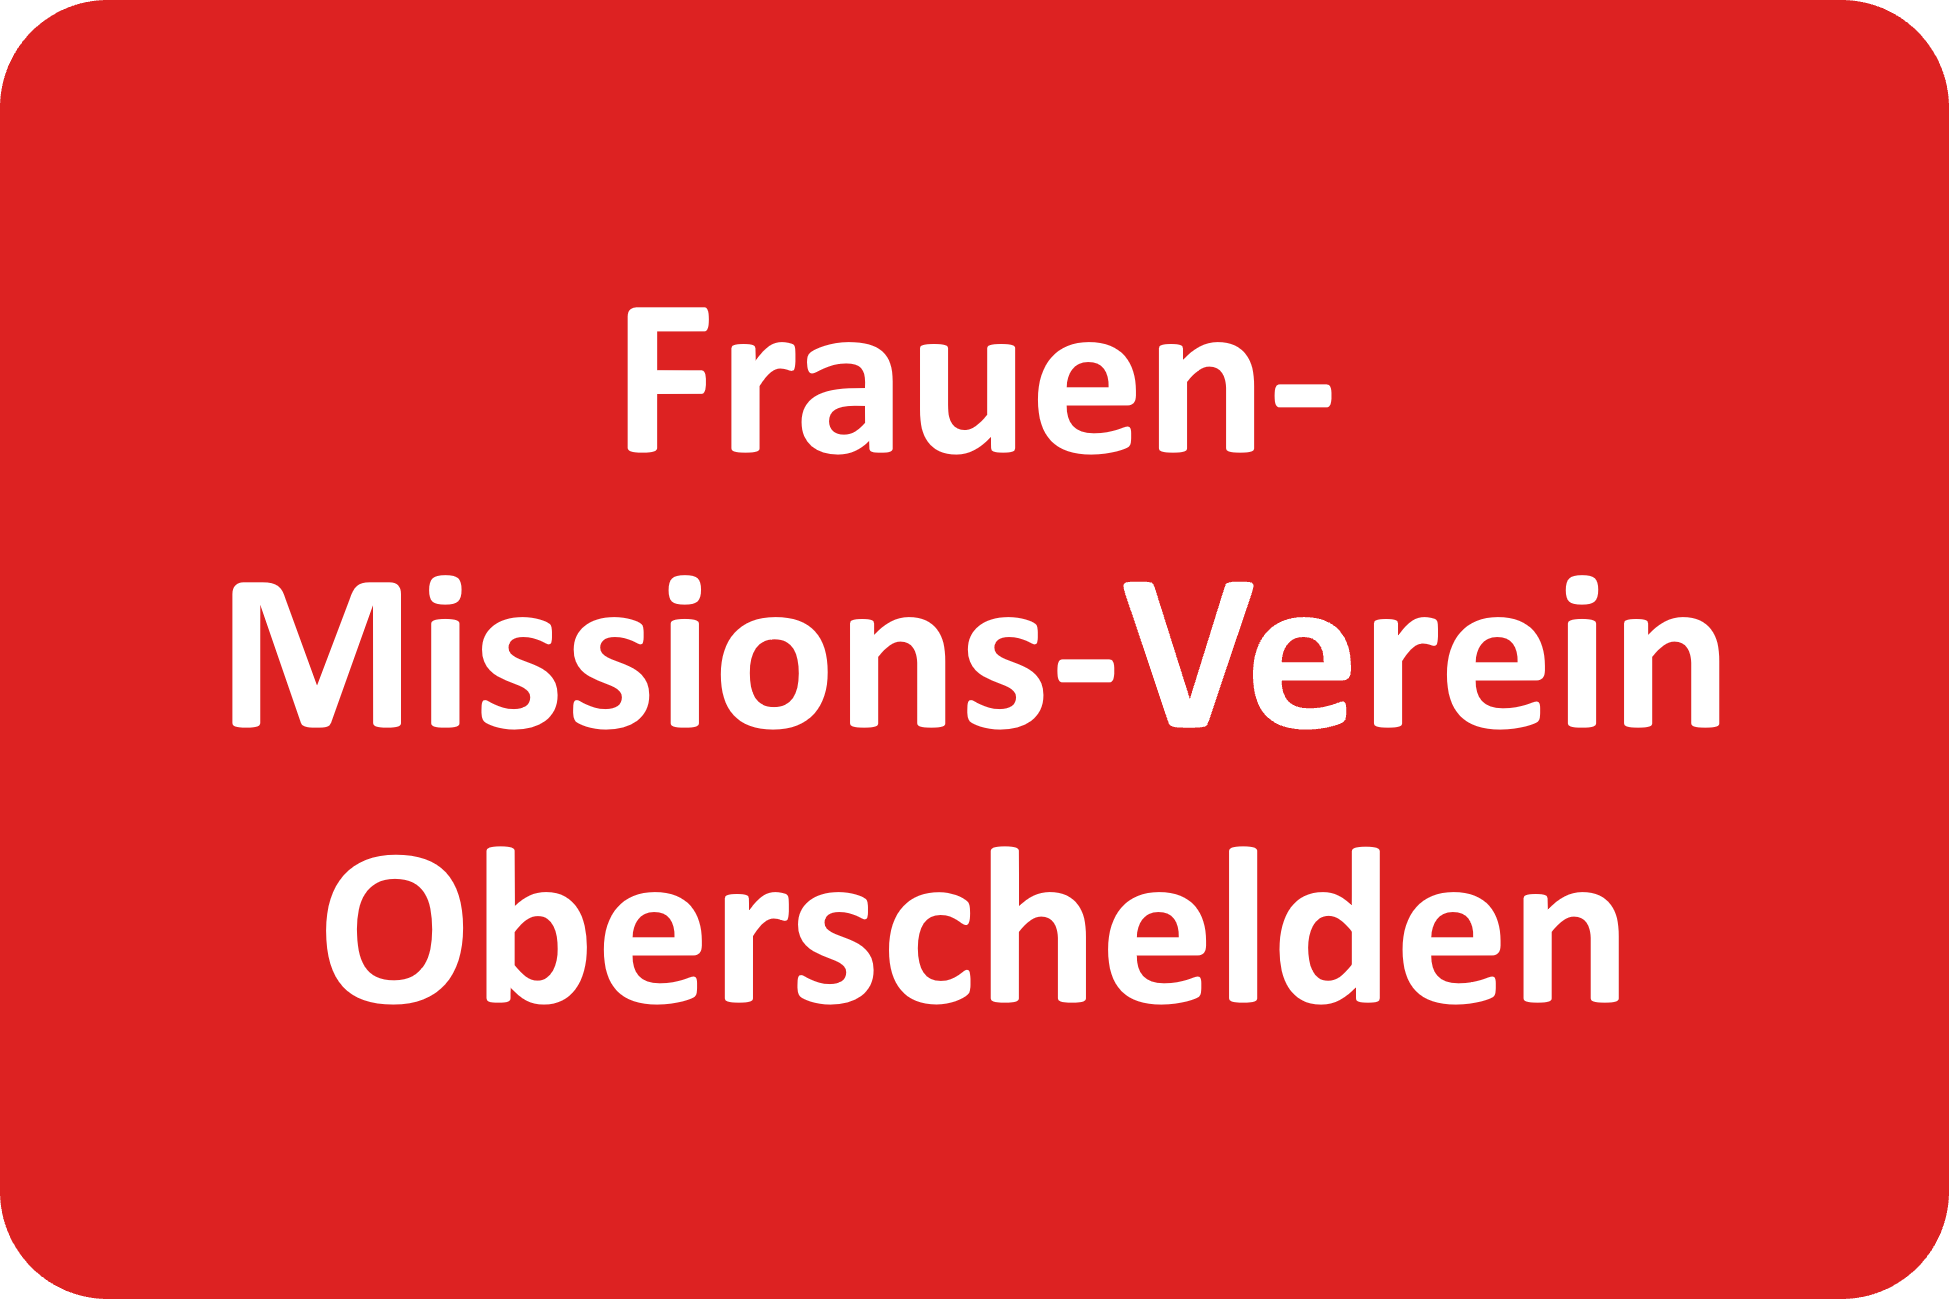 Frauen-Missions-Version Oberschelden